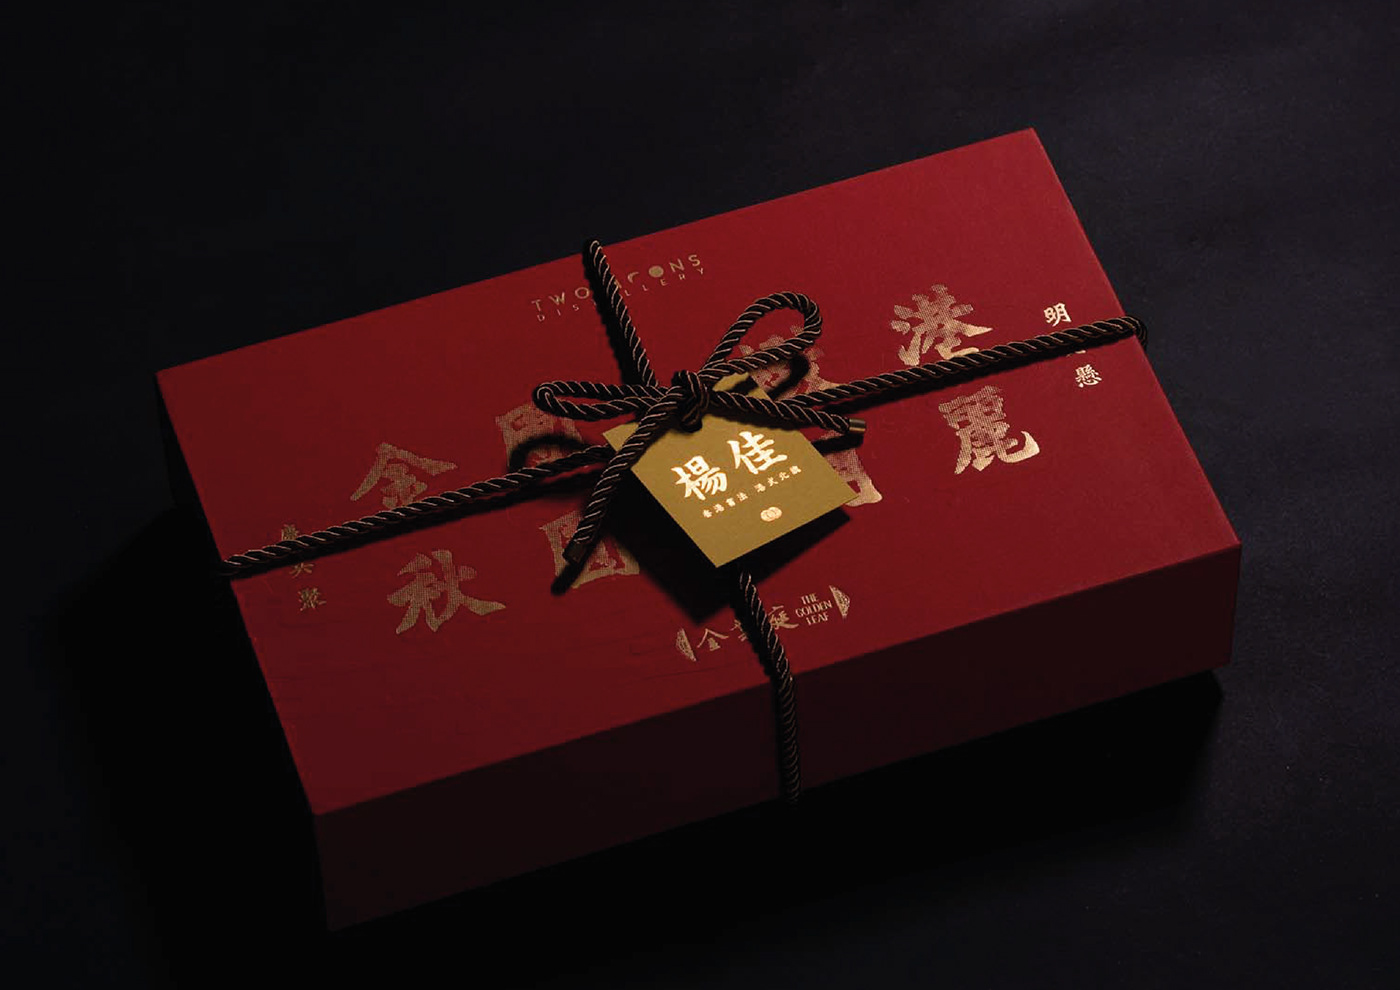 chinese Food  mid-autumn Mid-Autumn Festival Moon Festival mooncake package Packaging packaging design 中秋節 